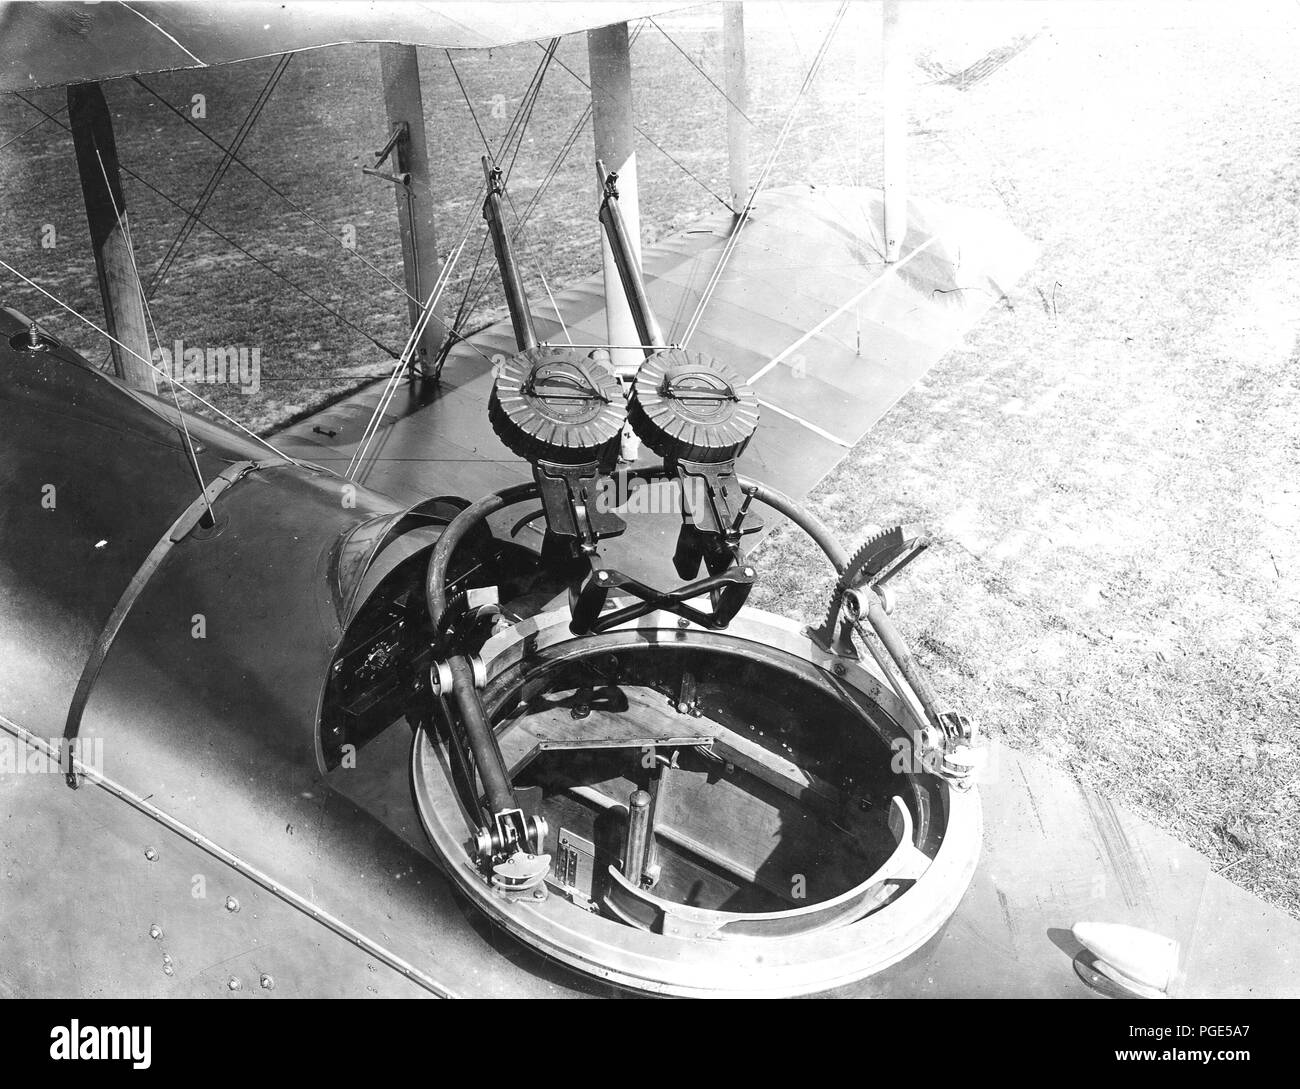 Blick auf De Haviland Ebene von der linken hinteren Viertel, in die gunner Cockpit suchen. 2 Montage von Lewis Guns. Venturi Luftgeschwindigkeit Messgerät auf Flügel 1918 Stütze montiert Stockfoto